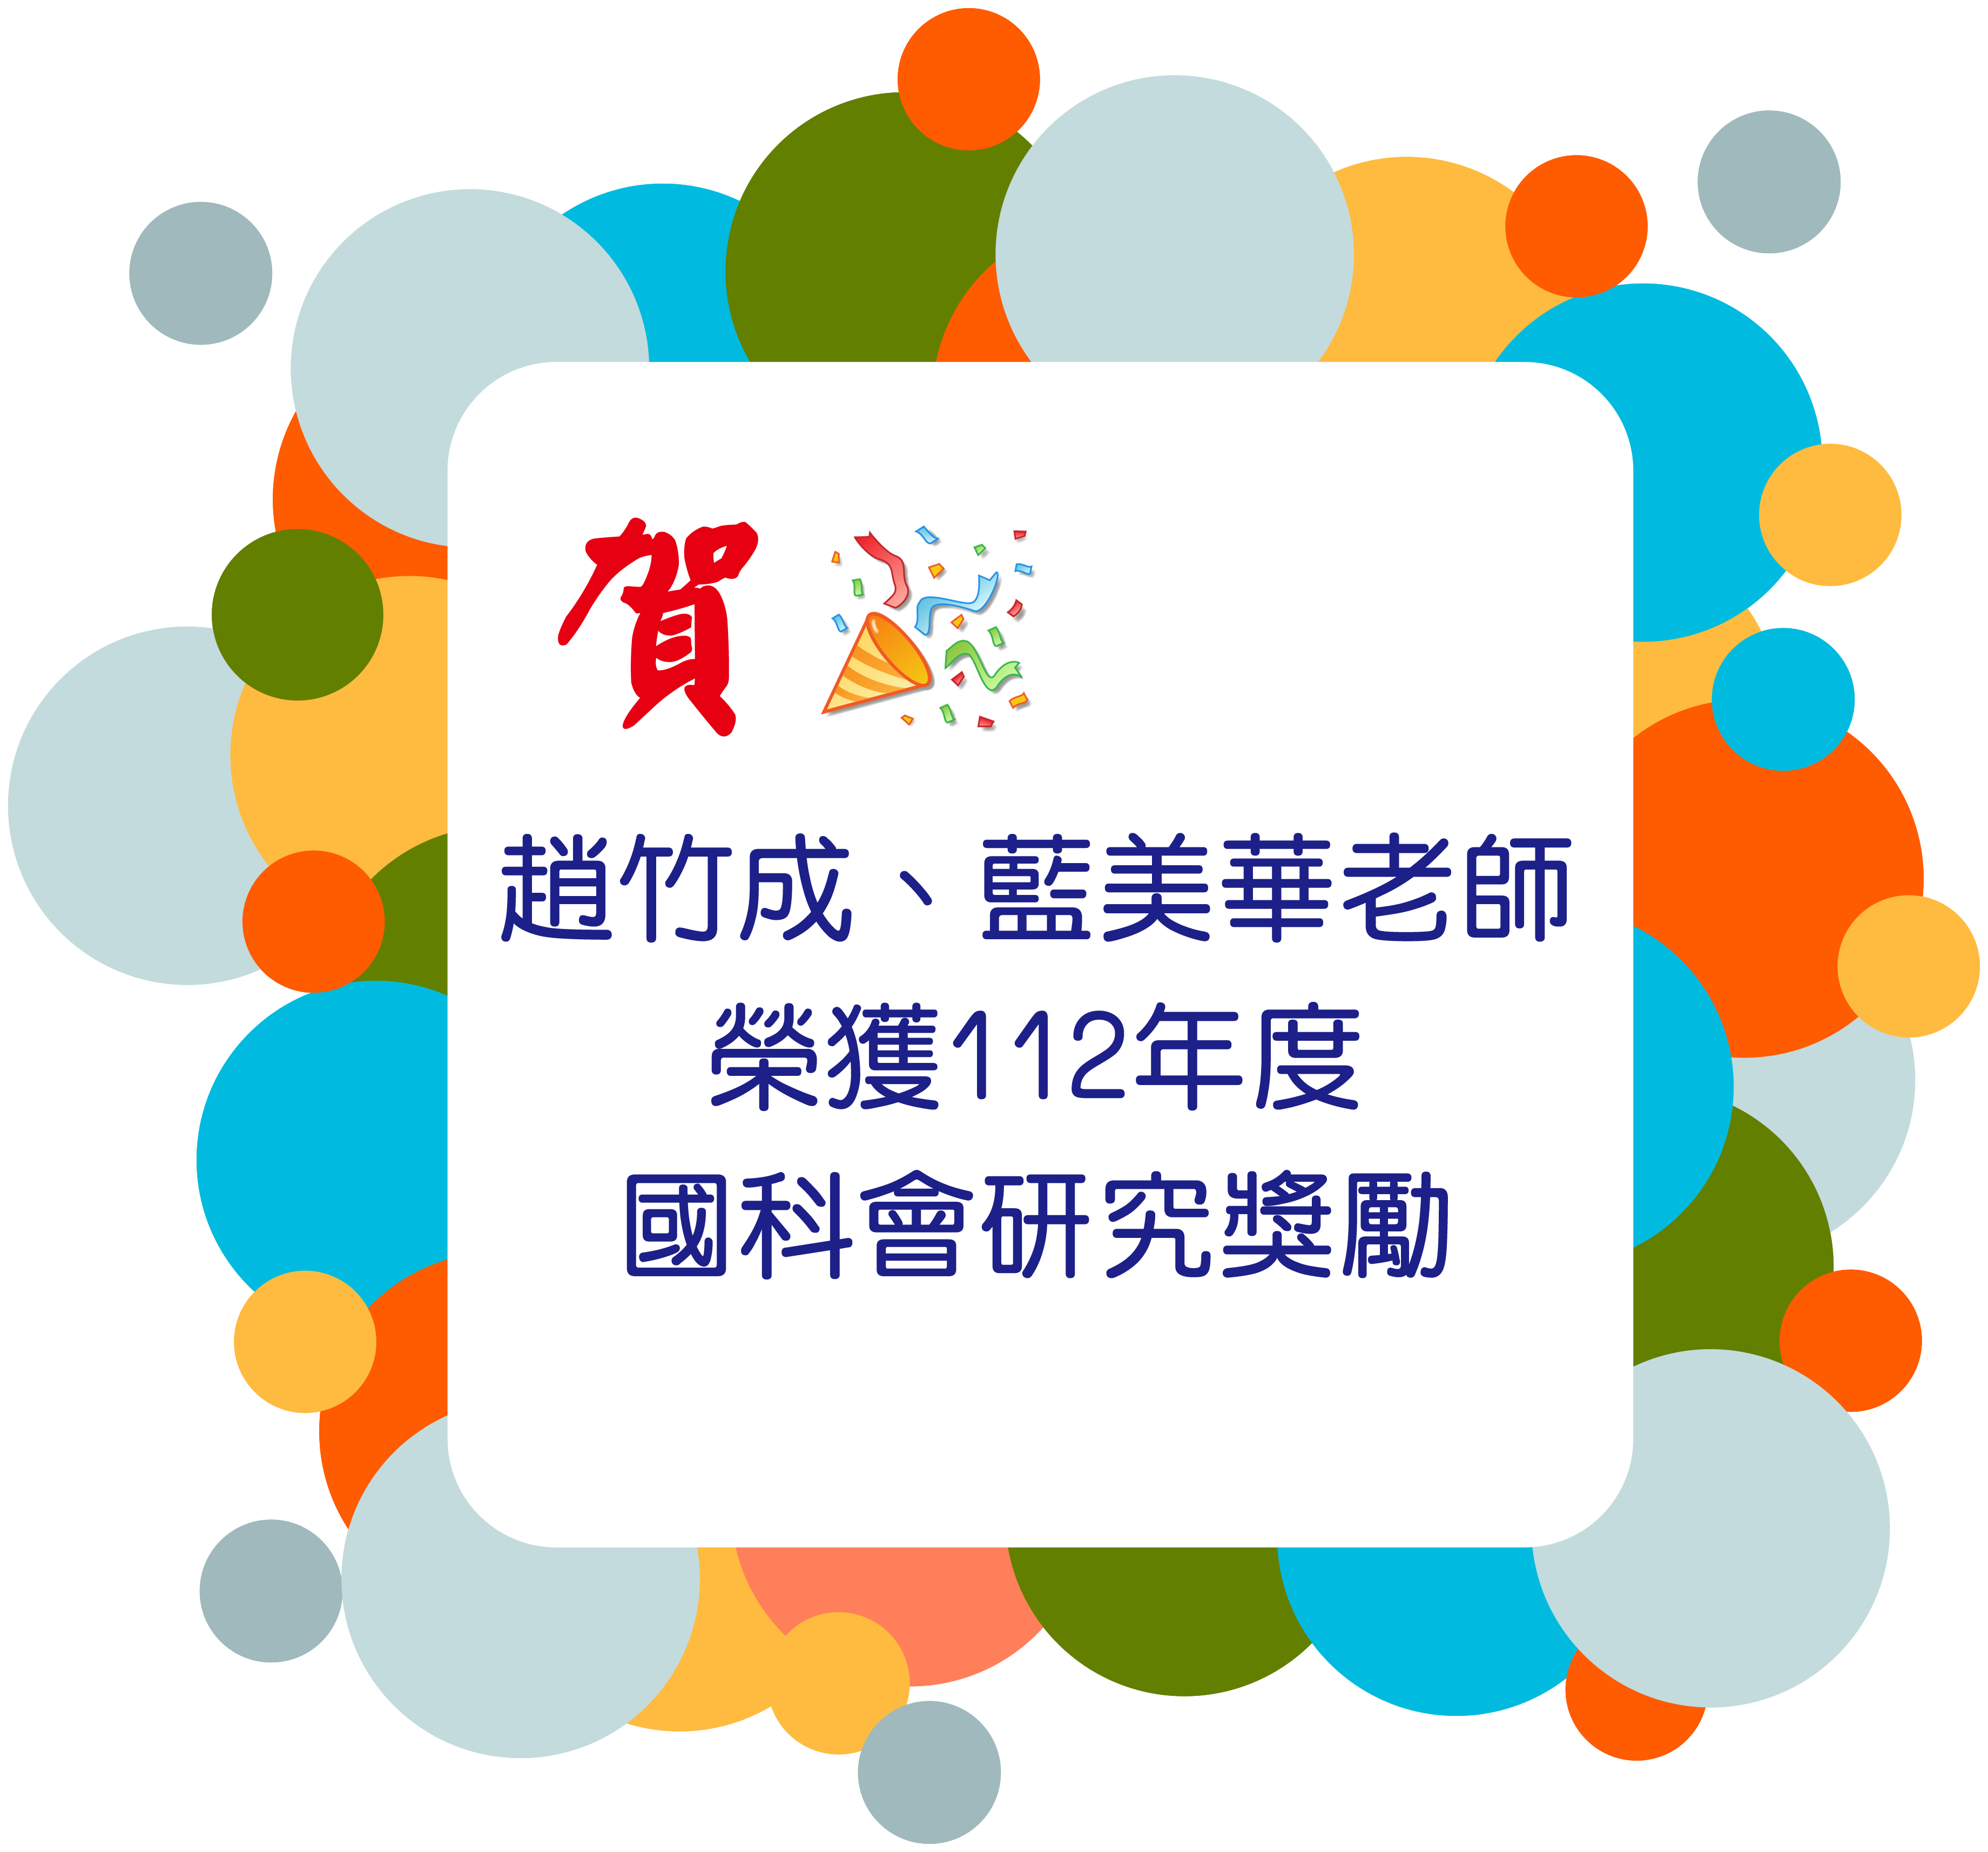 賀趙竹成、藍美華老師榮獲112年度國科會研究獎勵